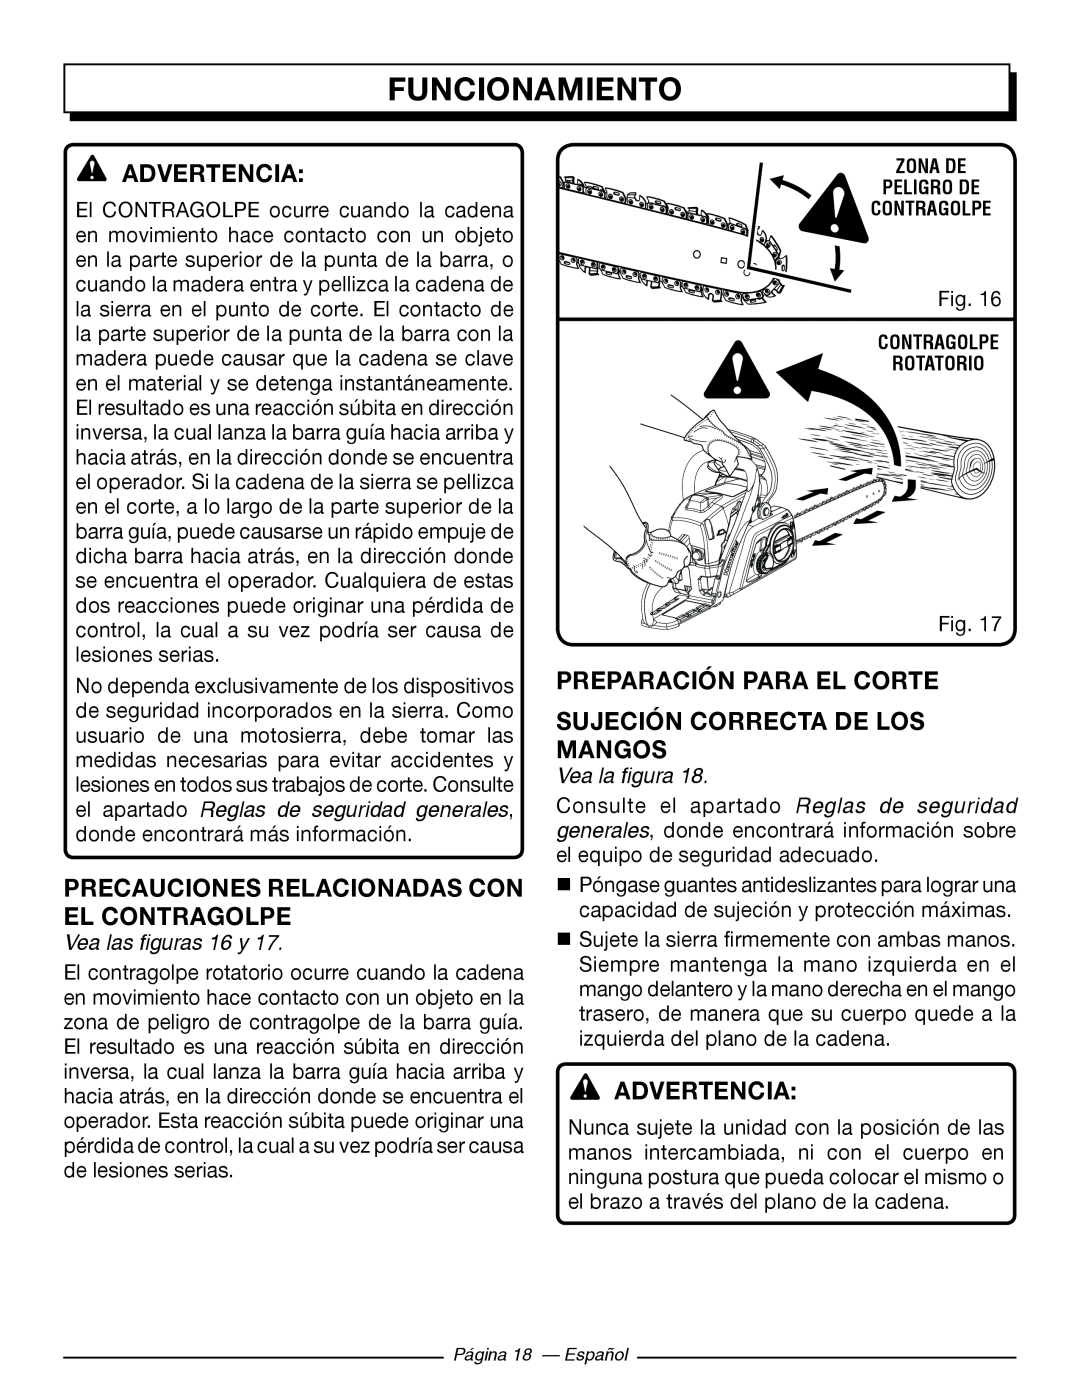 Homelite UT10586 Precauciones Relacionadas Con El Contragolpe, Preparación Para El Corte Sujeción Correcta De Los Mangos 